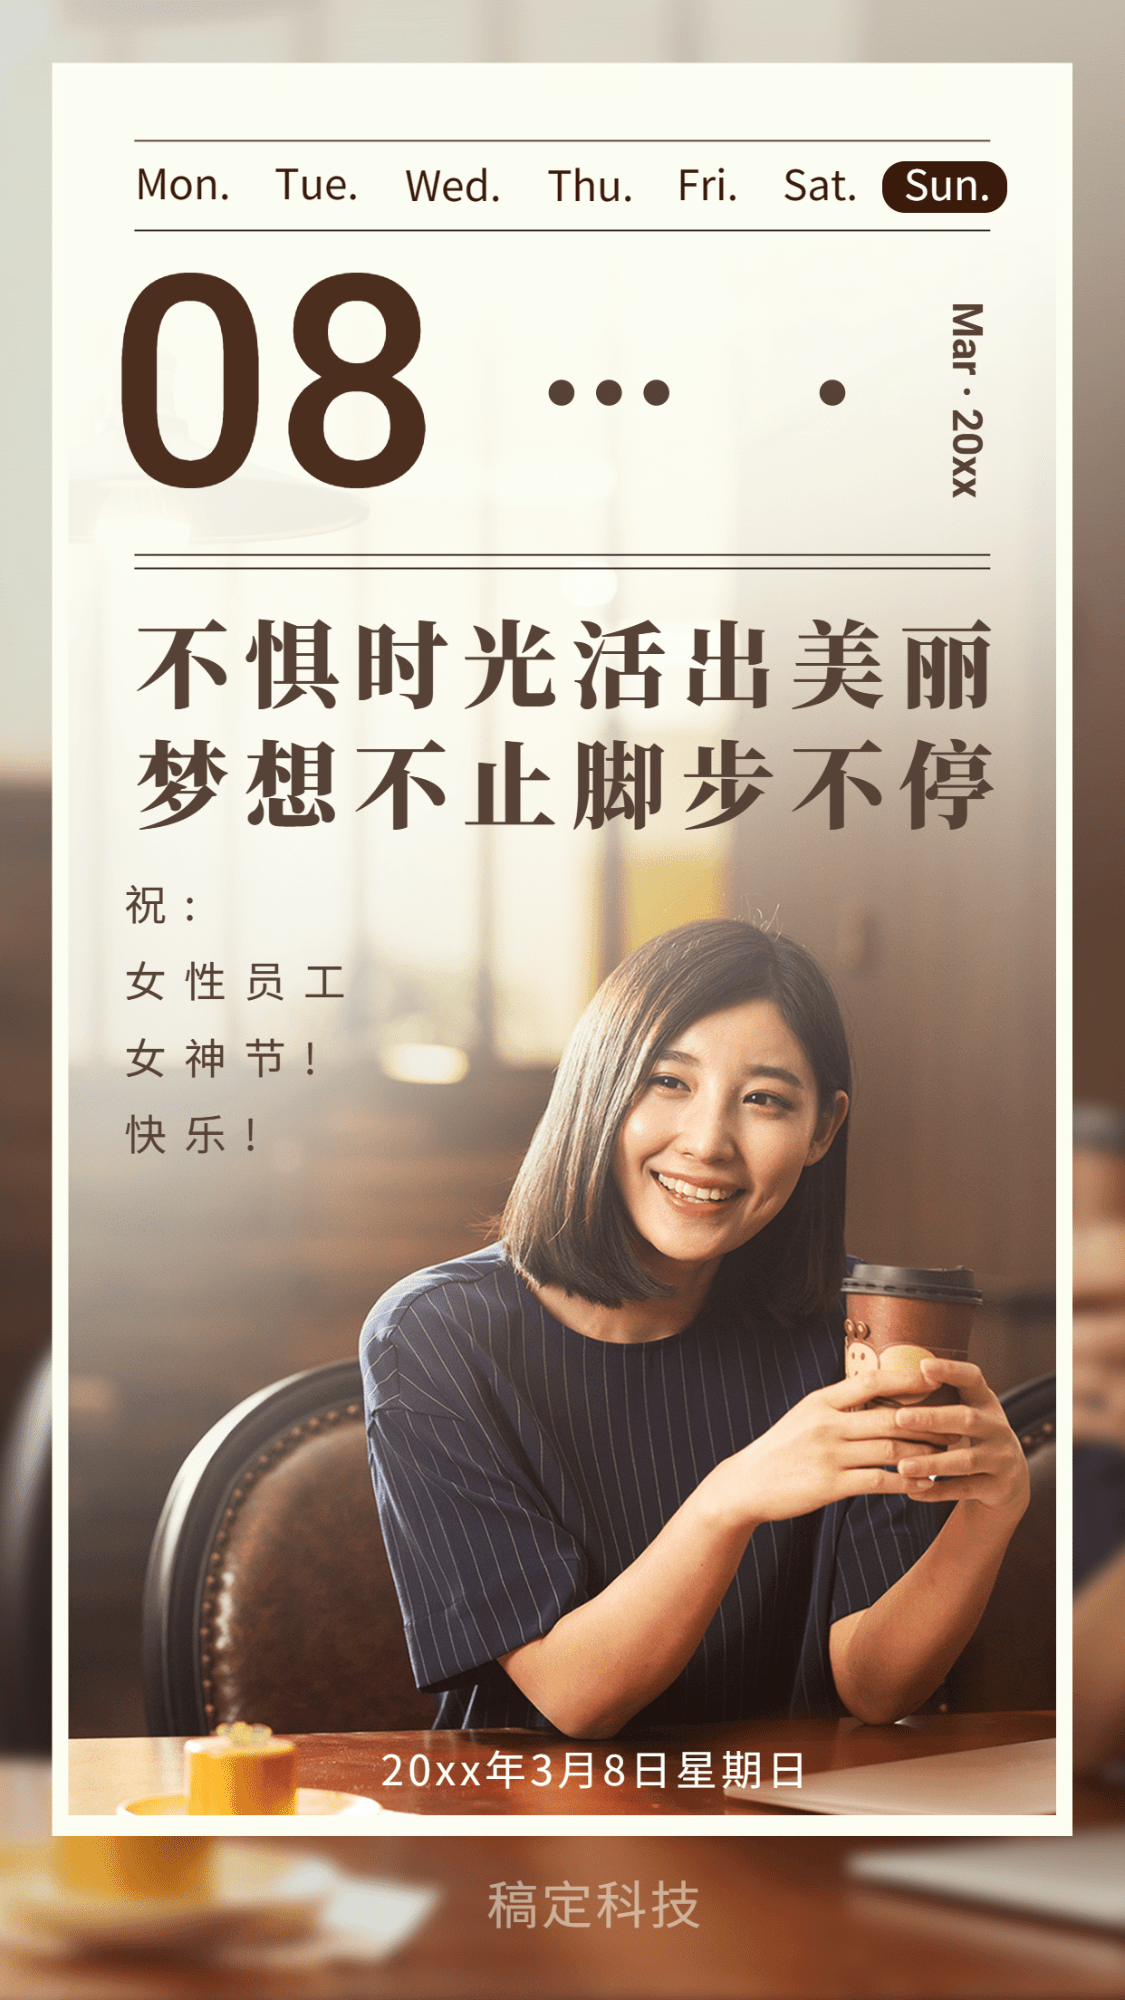 企业38女神节实景日签祝福海报